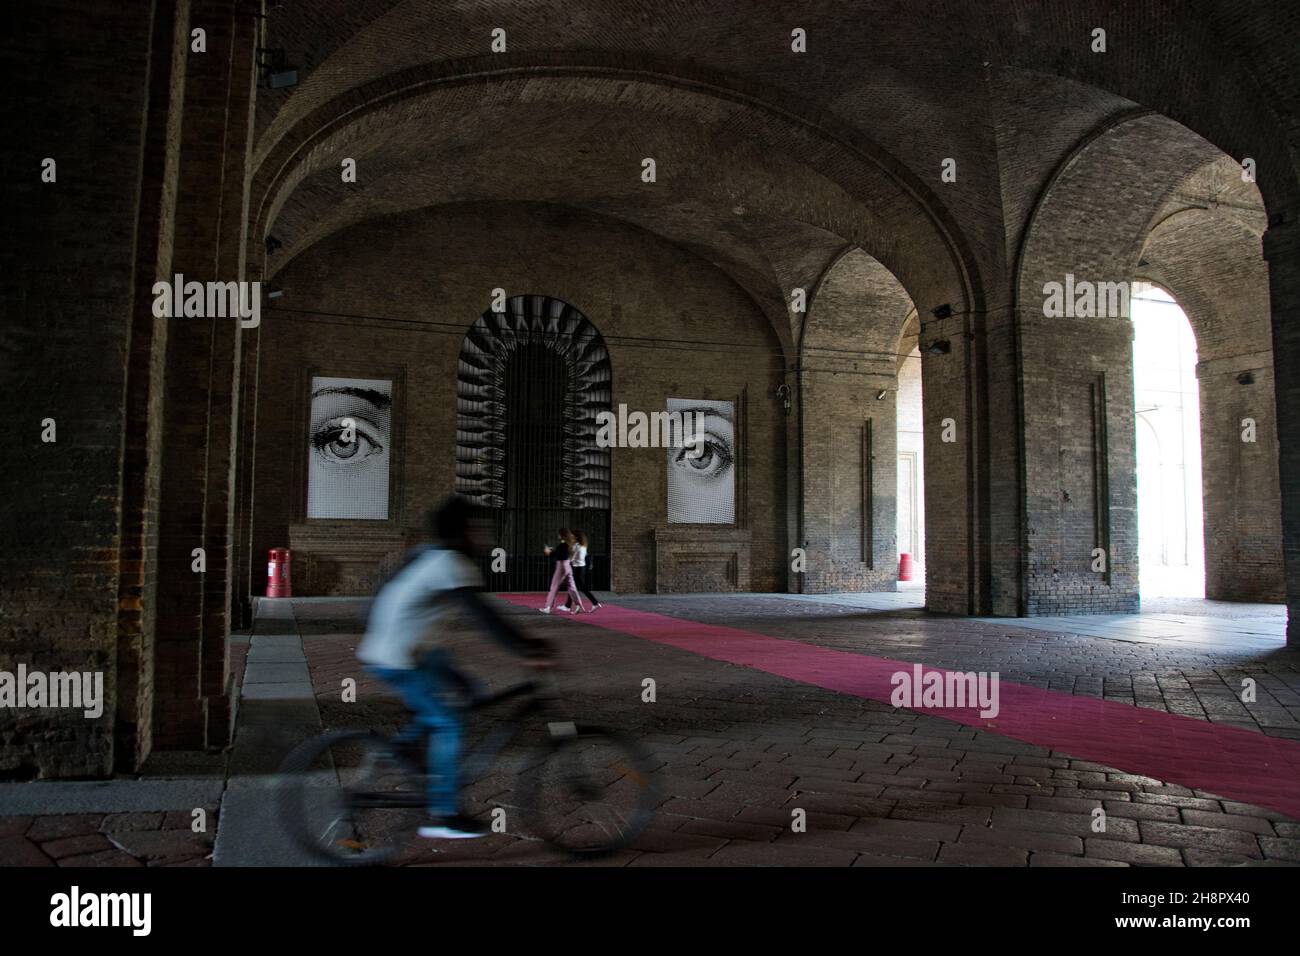 Markante Damenaugen im Eingangsbereich des Palazzo della Pilotta di Parma Foto Stock